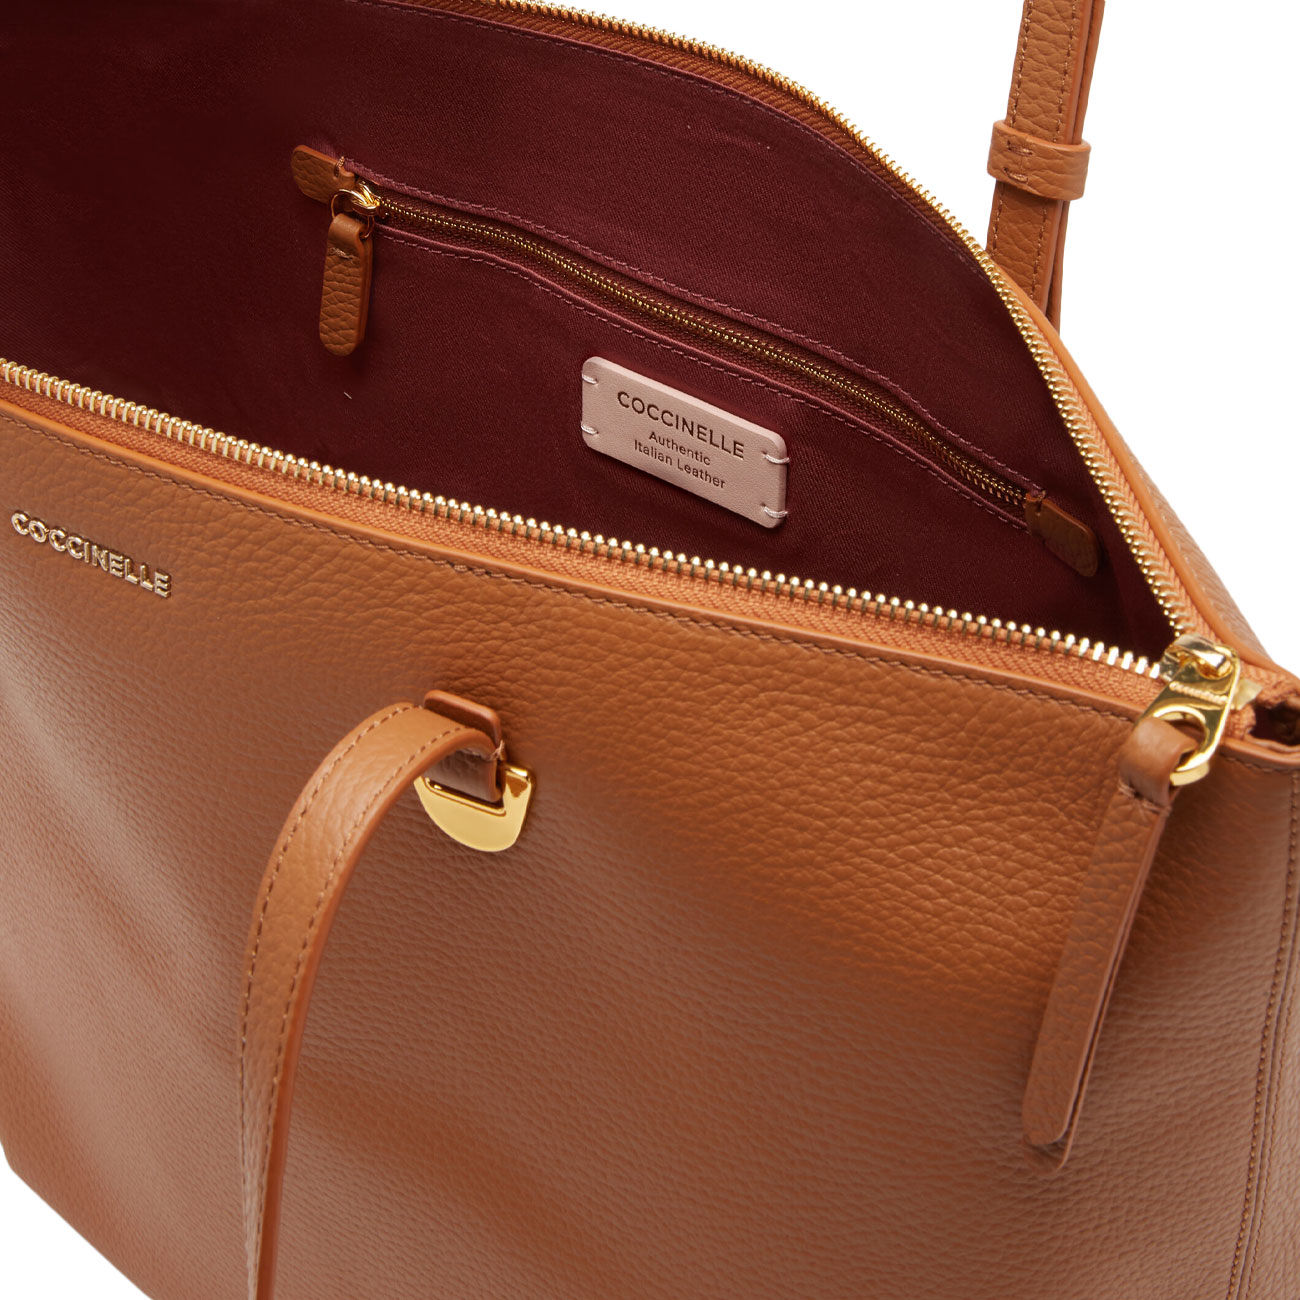 Da Milano Backpacks : Buy Da Milano Genuine Leather Caramel Ladies